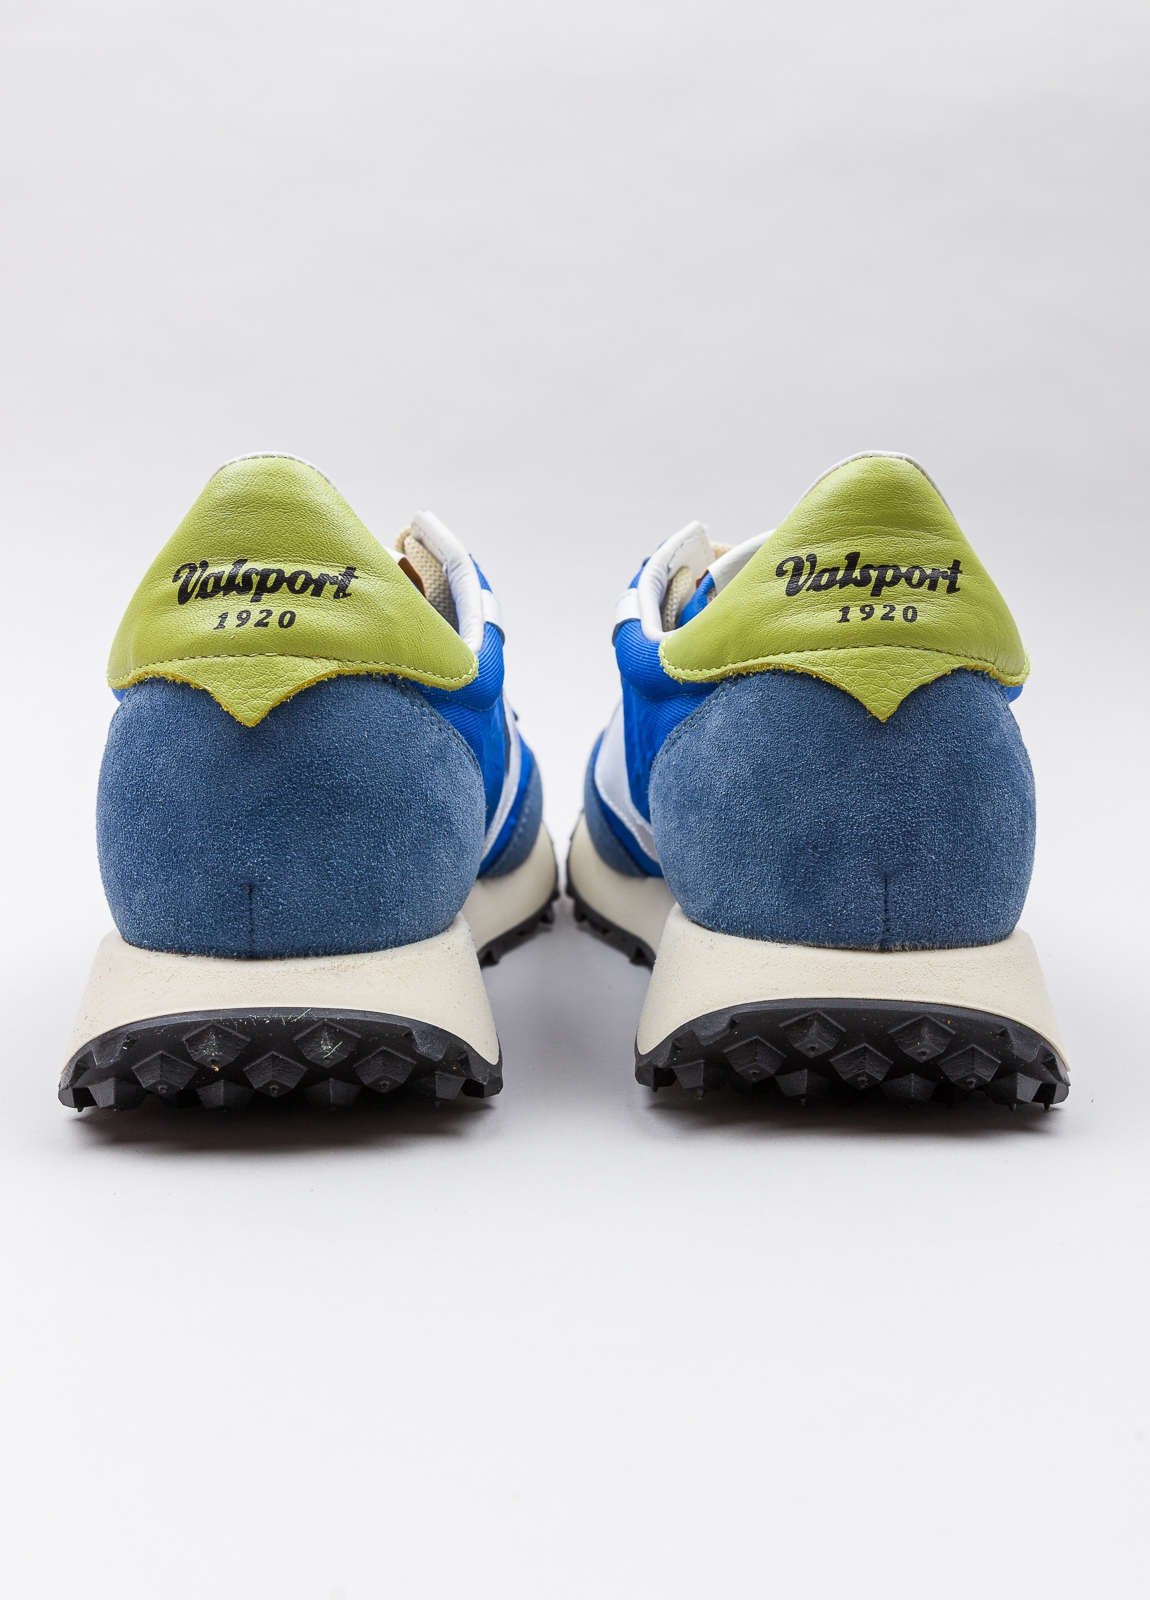 Sneakers VALSPORT azul con detalles blanco y amarillo - Ítem2